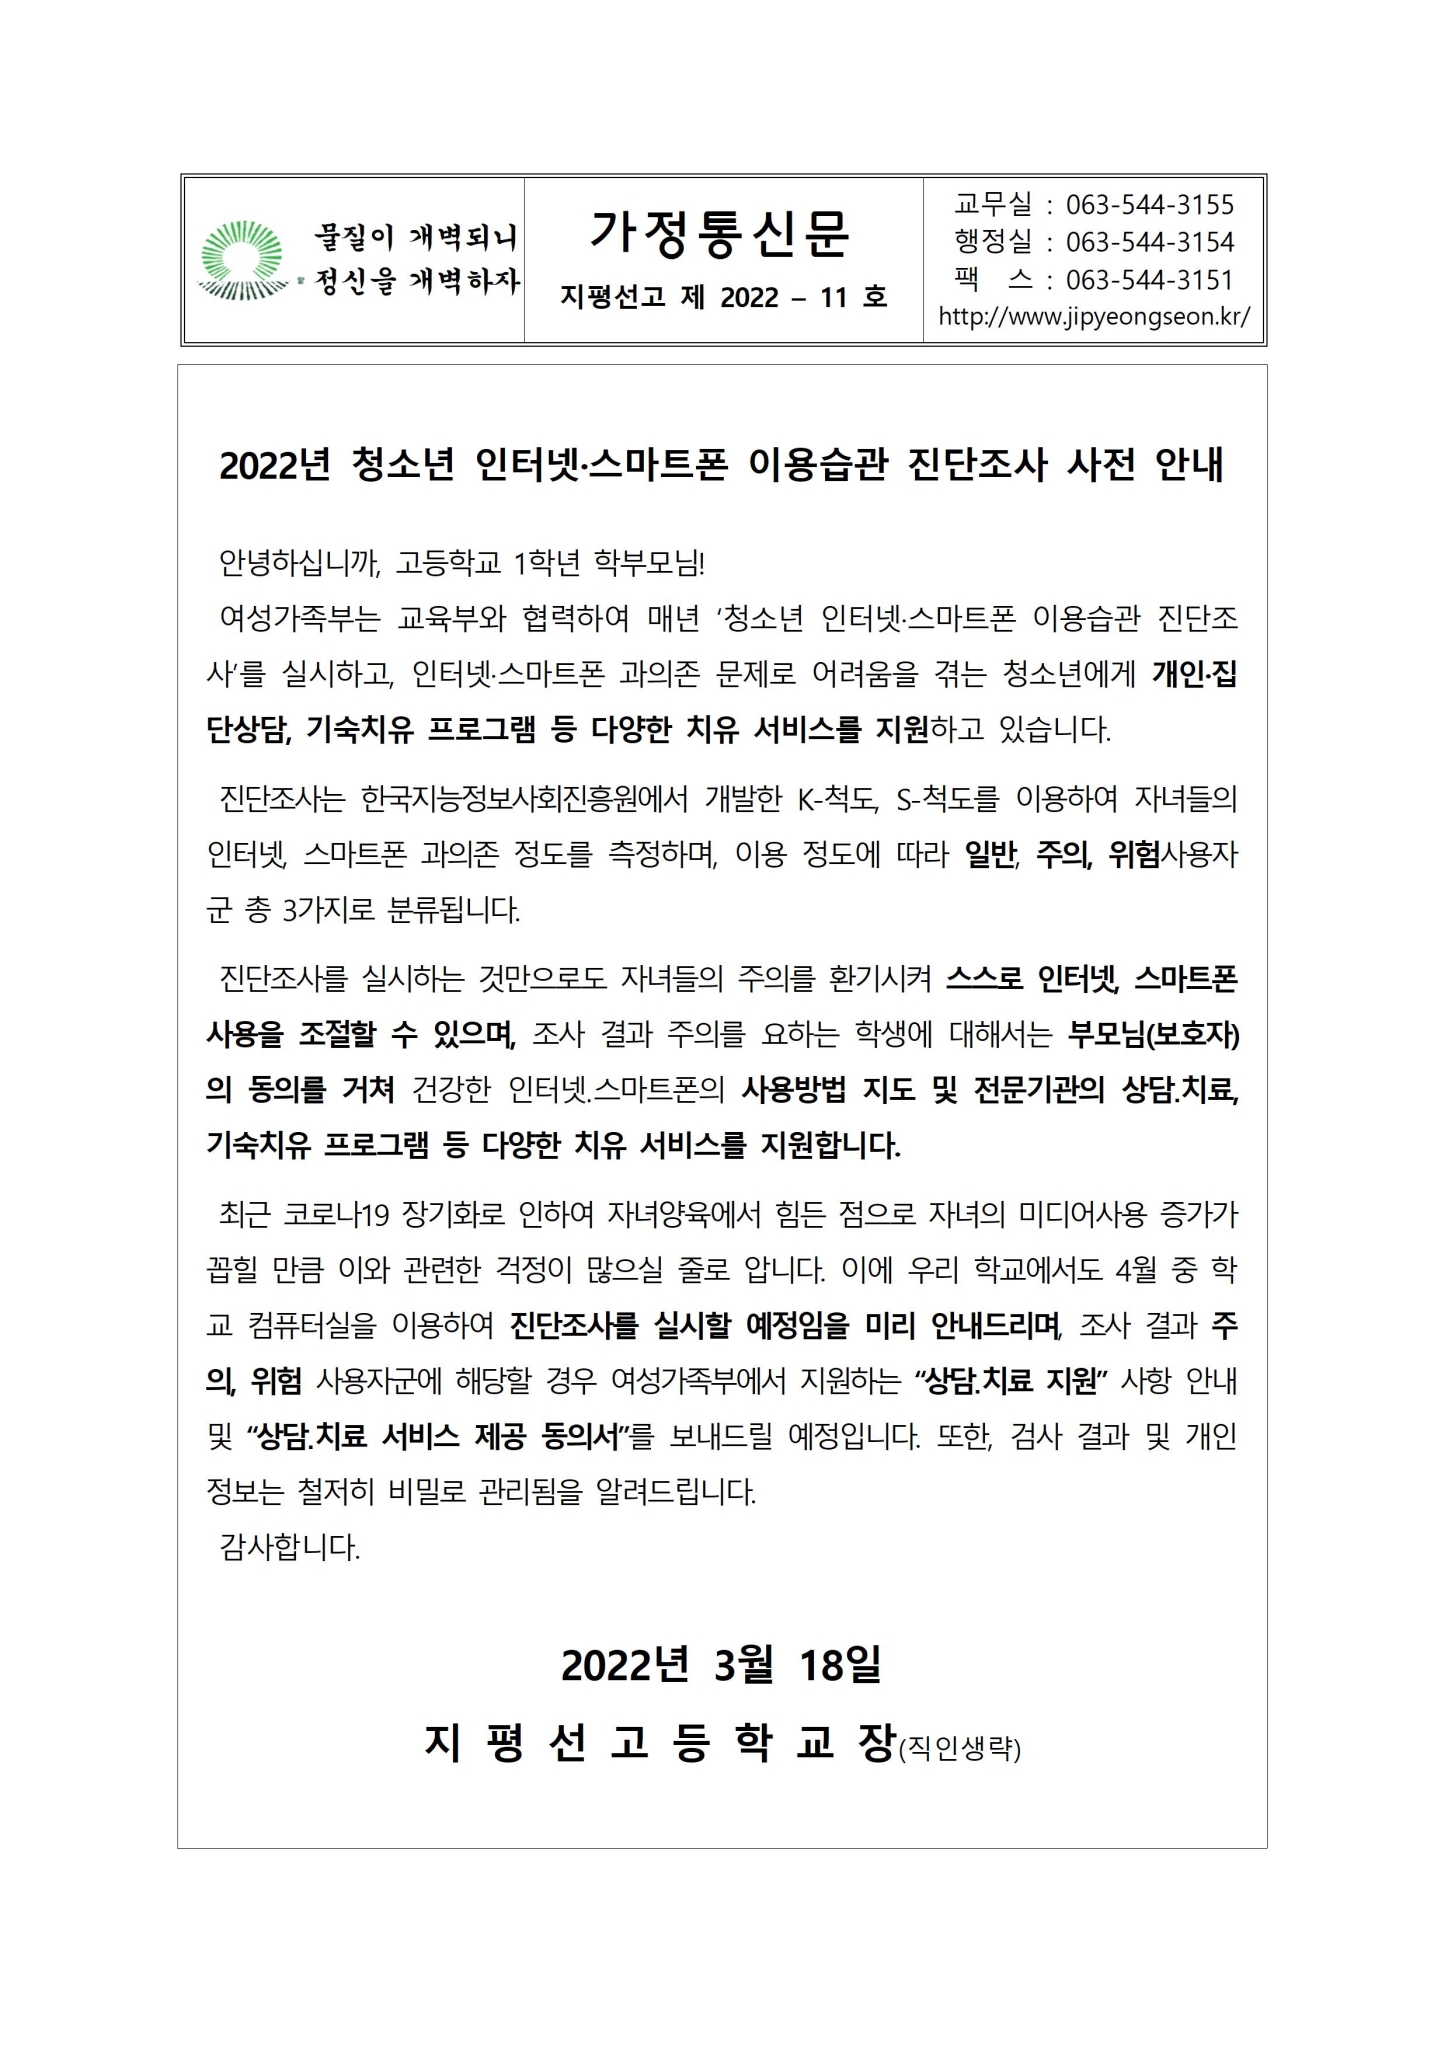 가정통신문 2022-11호 2022년 청소년 인터넷 스마트폰 이용습관 진단조사 사전 안내001